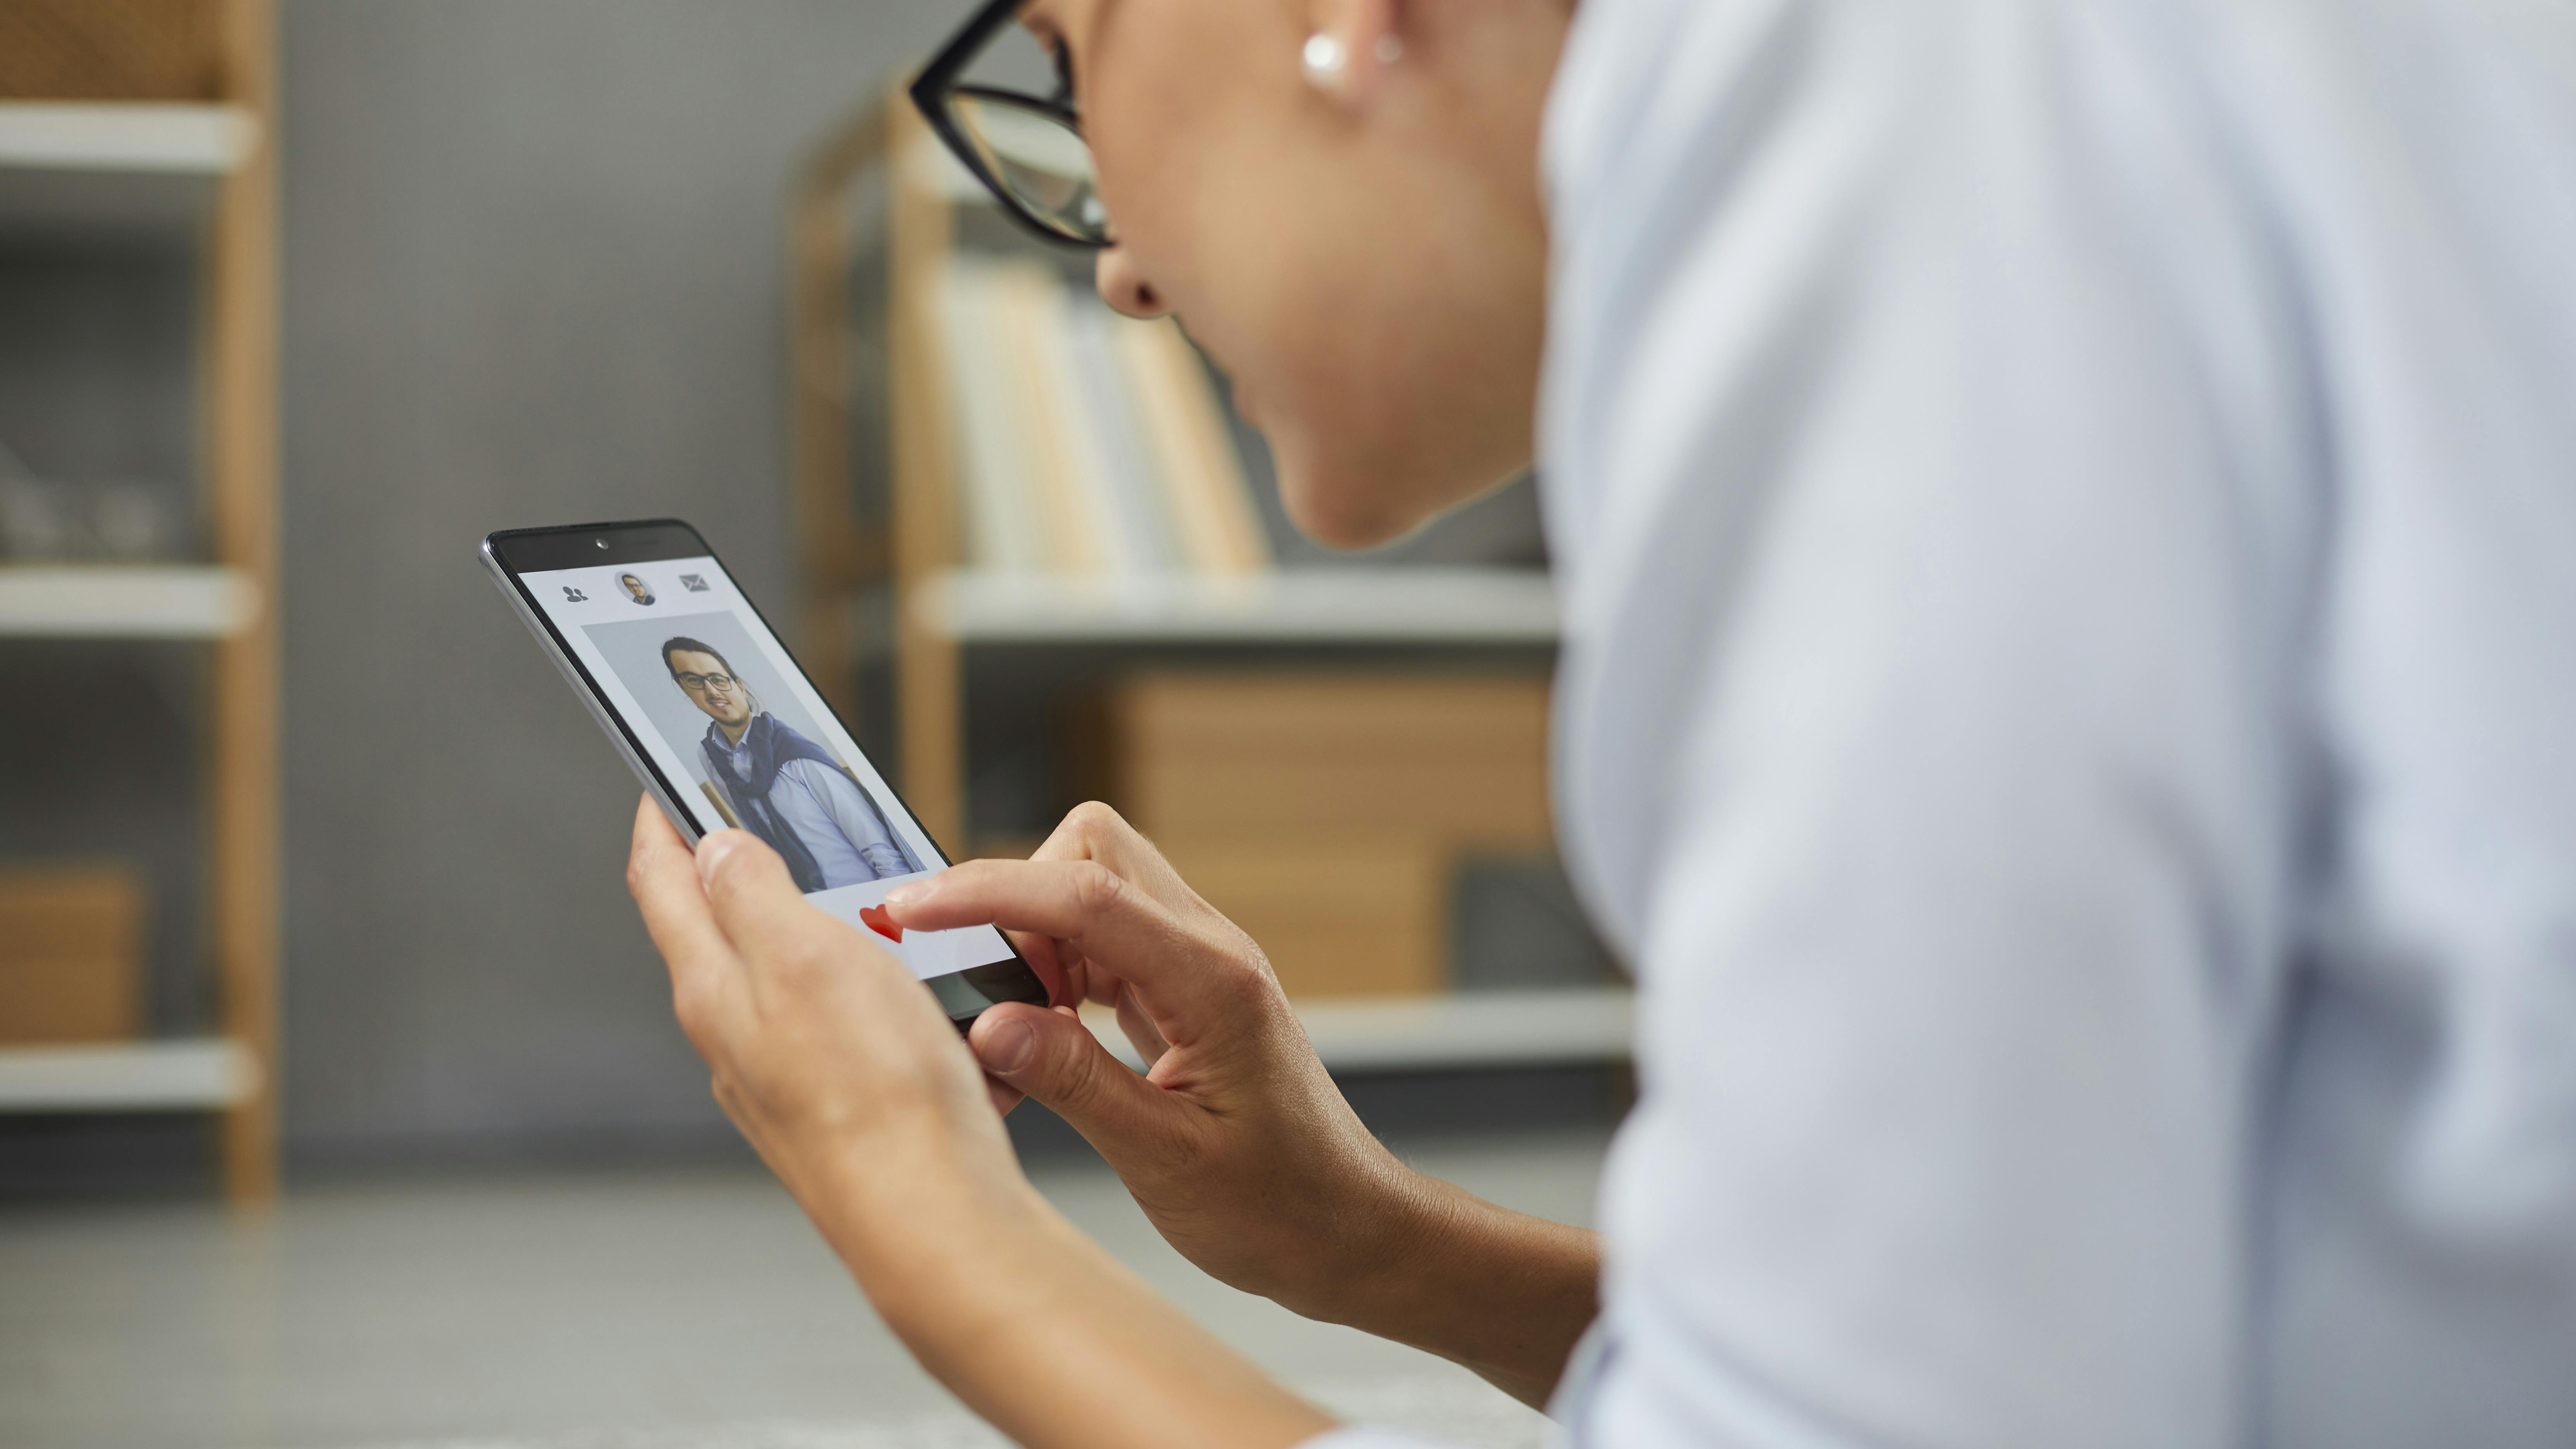 Ung kvinde ser på en dating-app på sin mobil